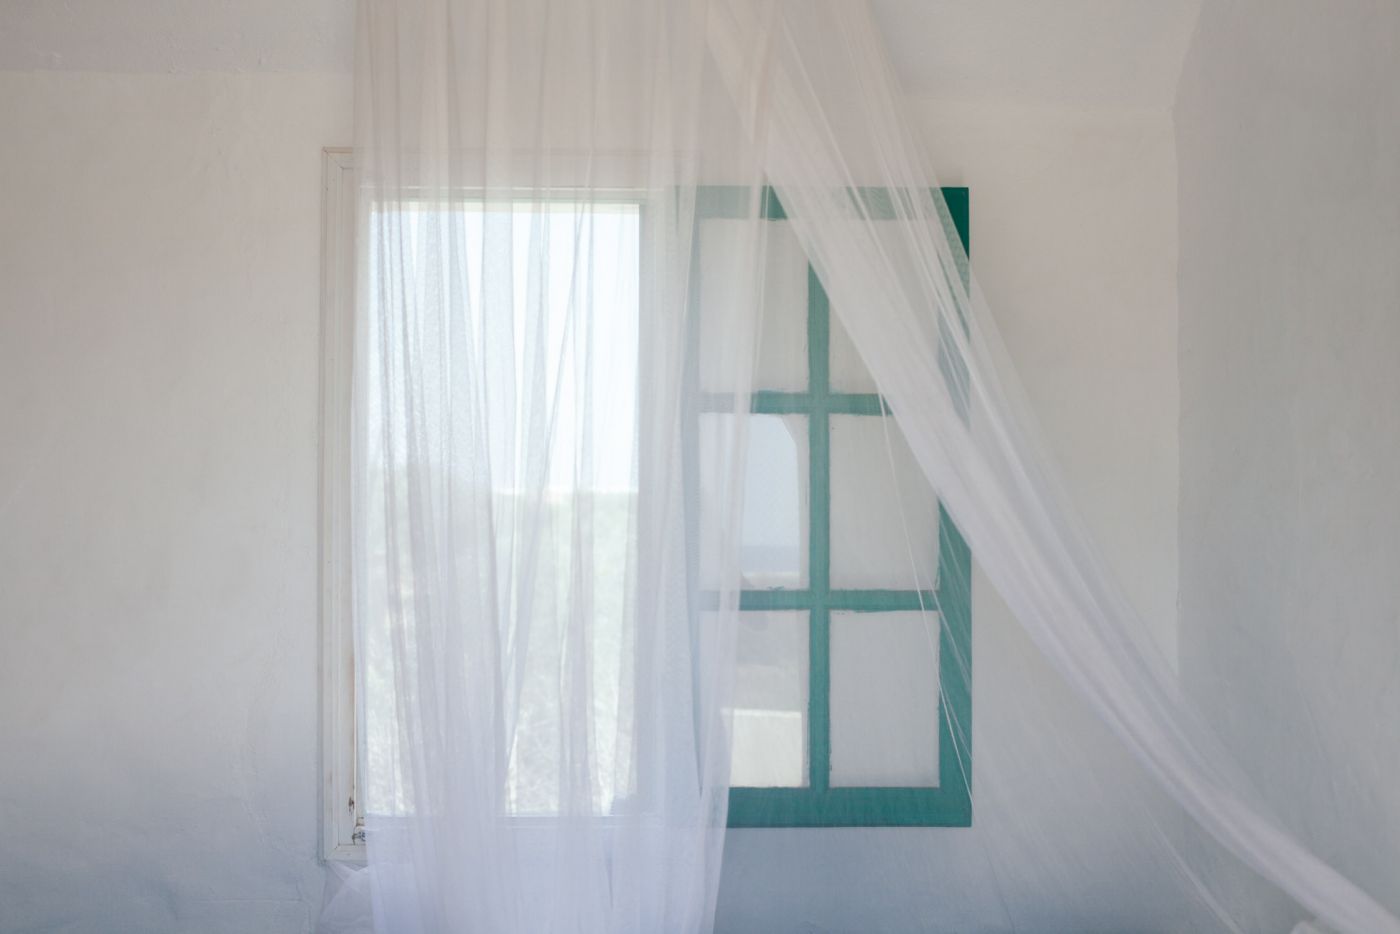 Green window frame, white curtains, Tunisia